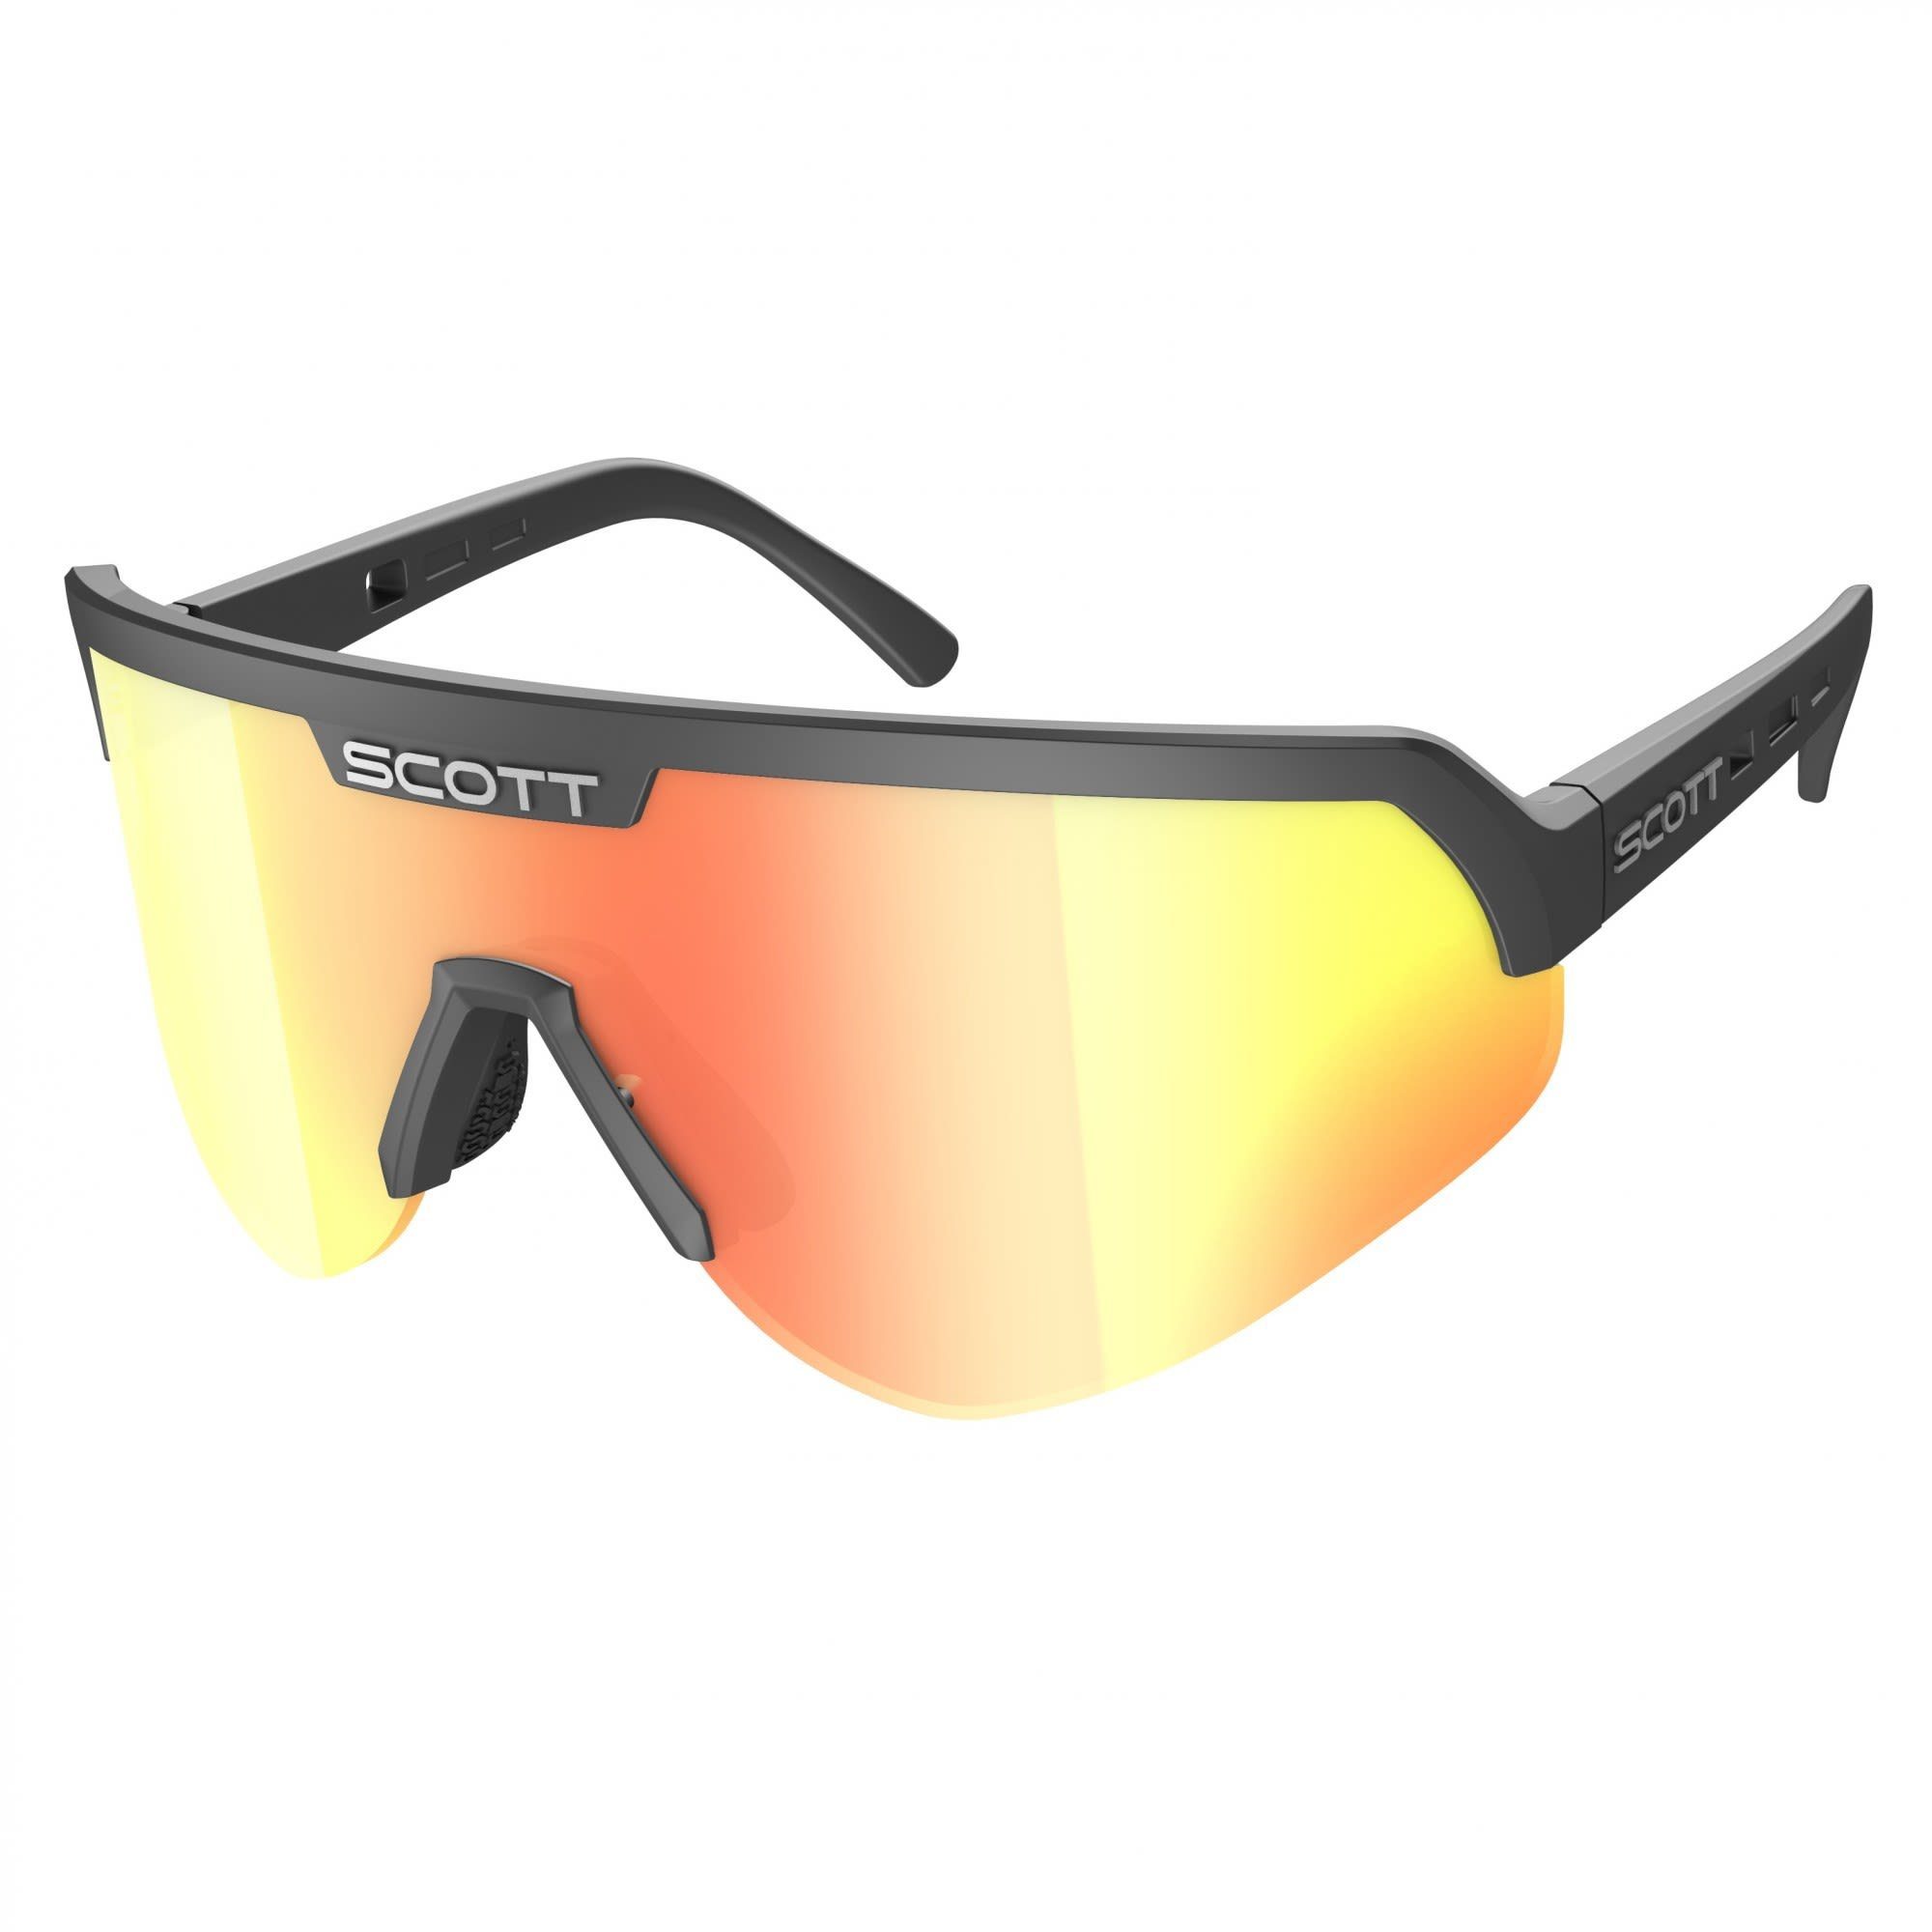 Scott Fahrradbrille Scott Sport Shield - Accessoires Sunglasses Red Chrome Black